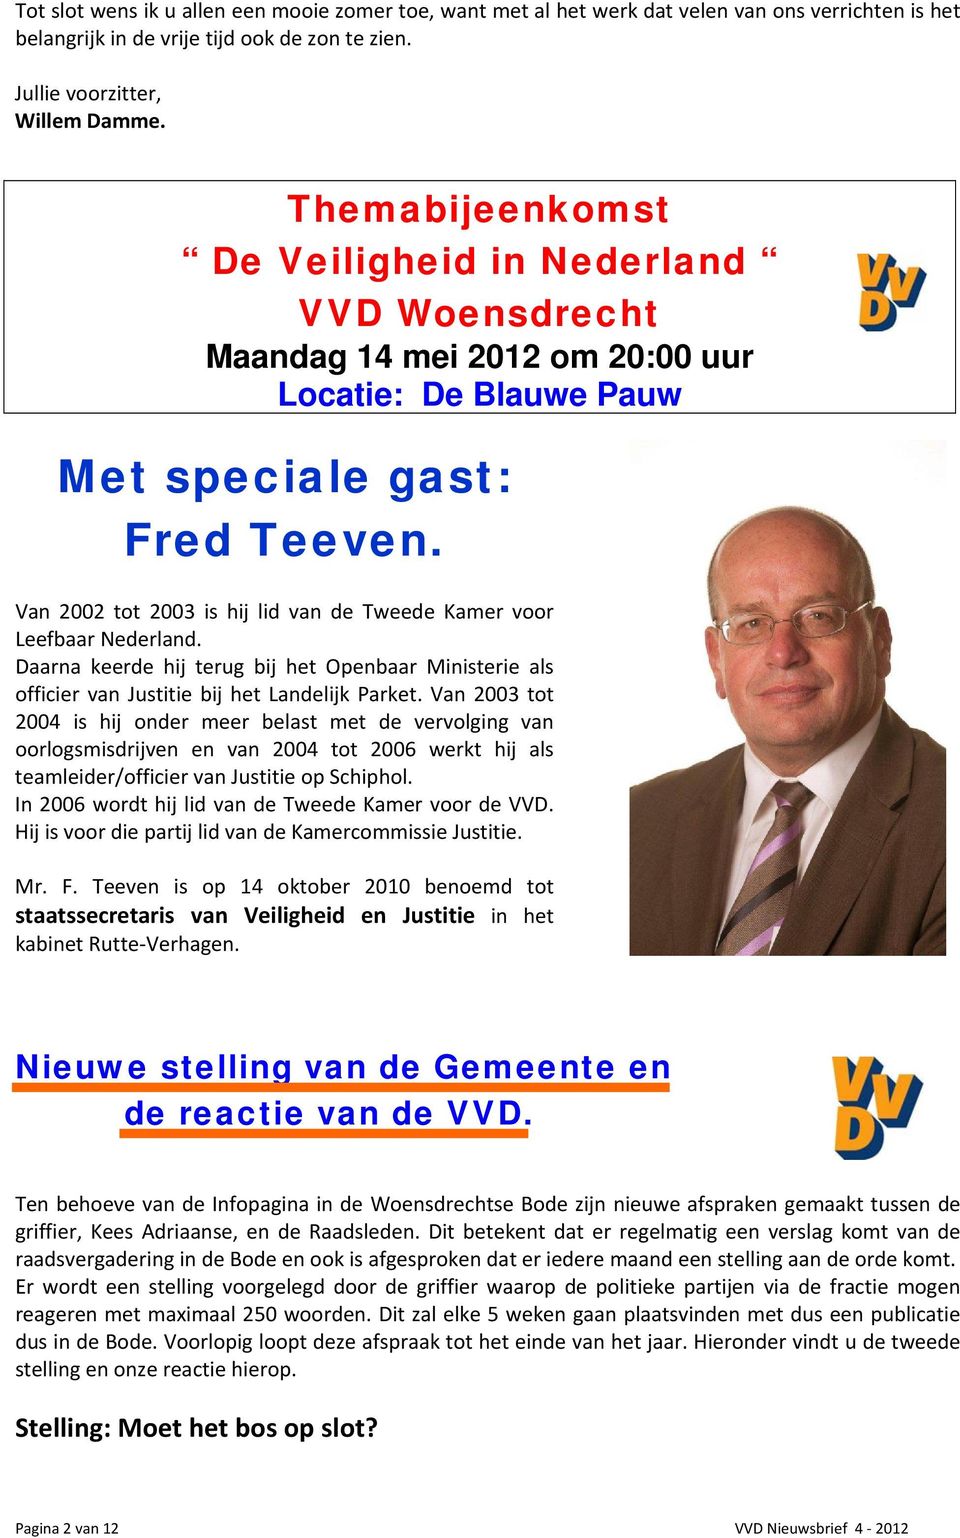 Van 2002 tot 2003 is hij lid van de Tweede Kamer voor Leefbaar Nederland. Daarna keerde hij terug bij het Openbaar Ministerie als officier van Justitie bij het Landelijk Parket.